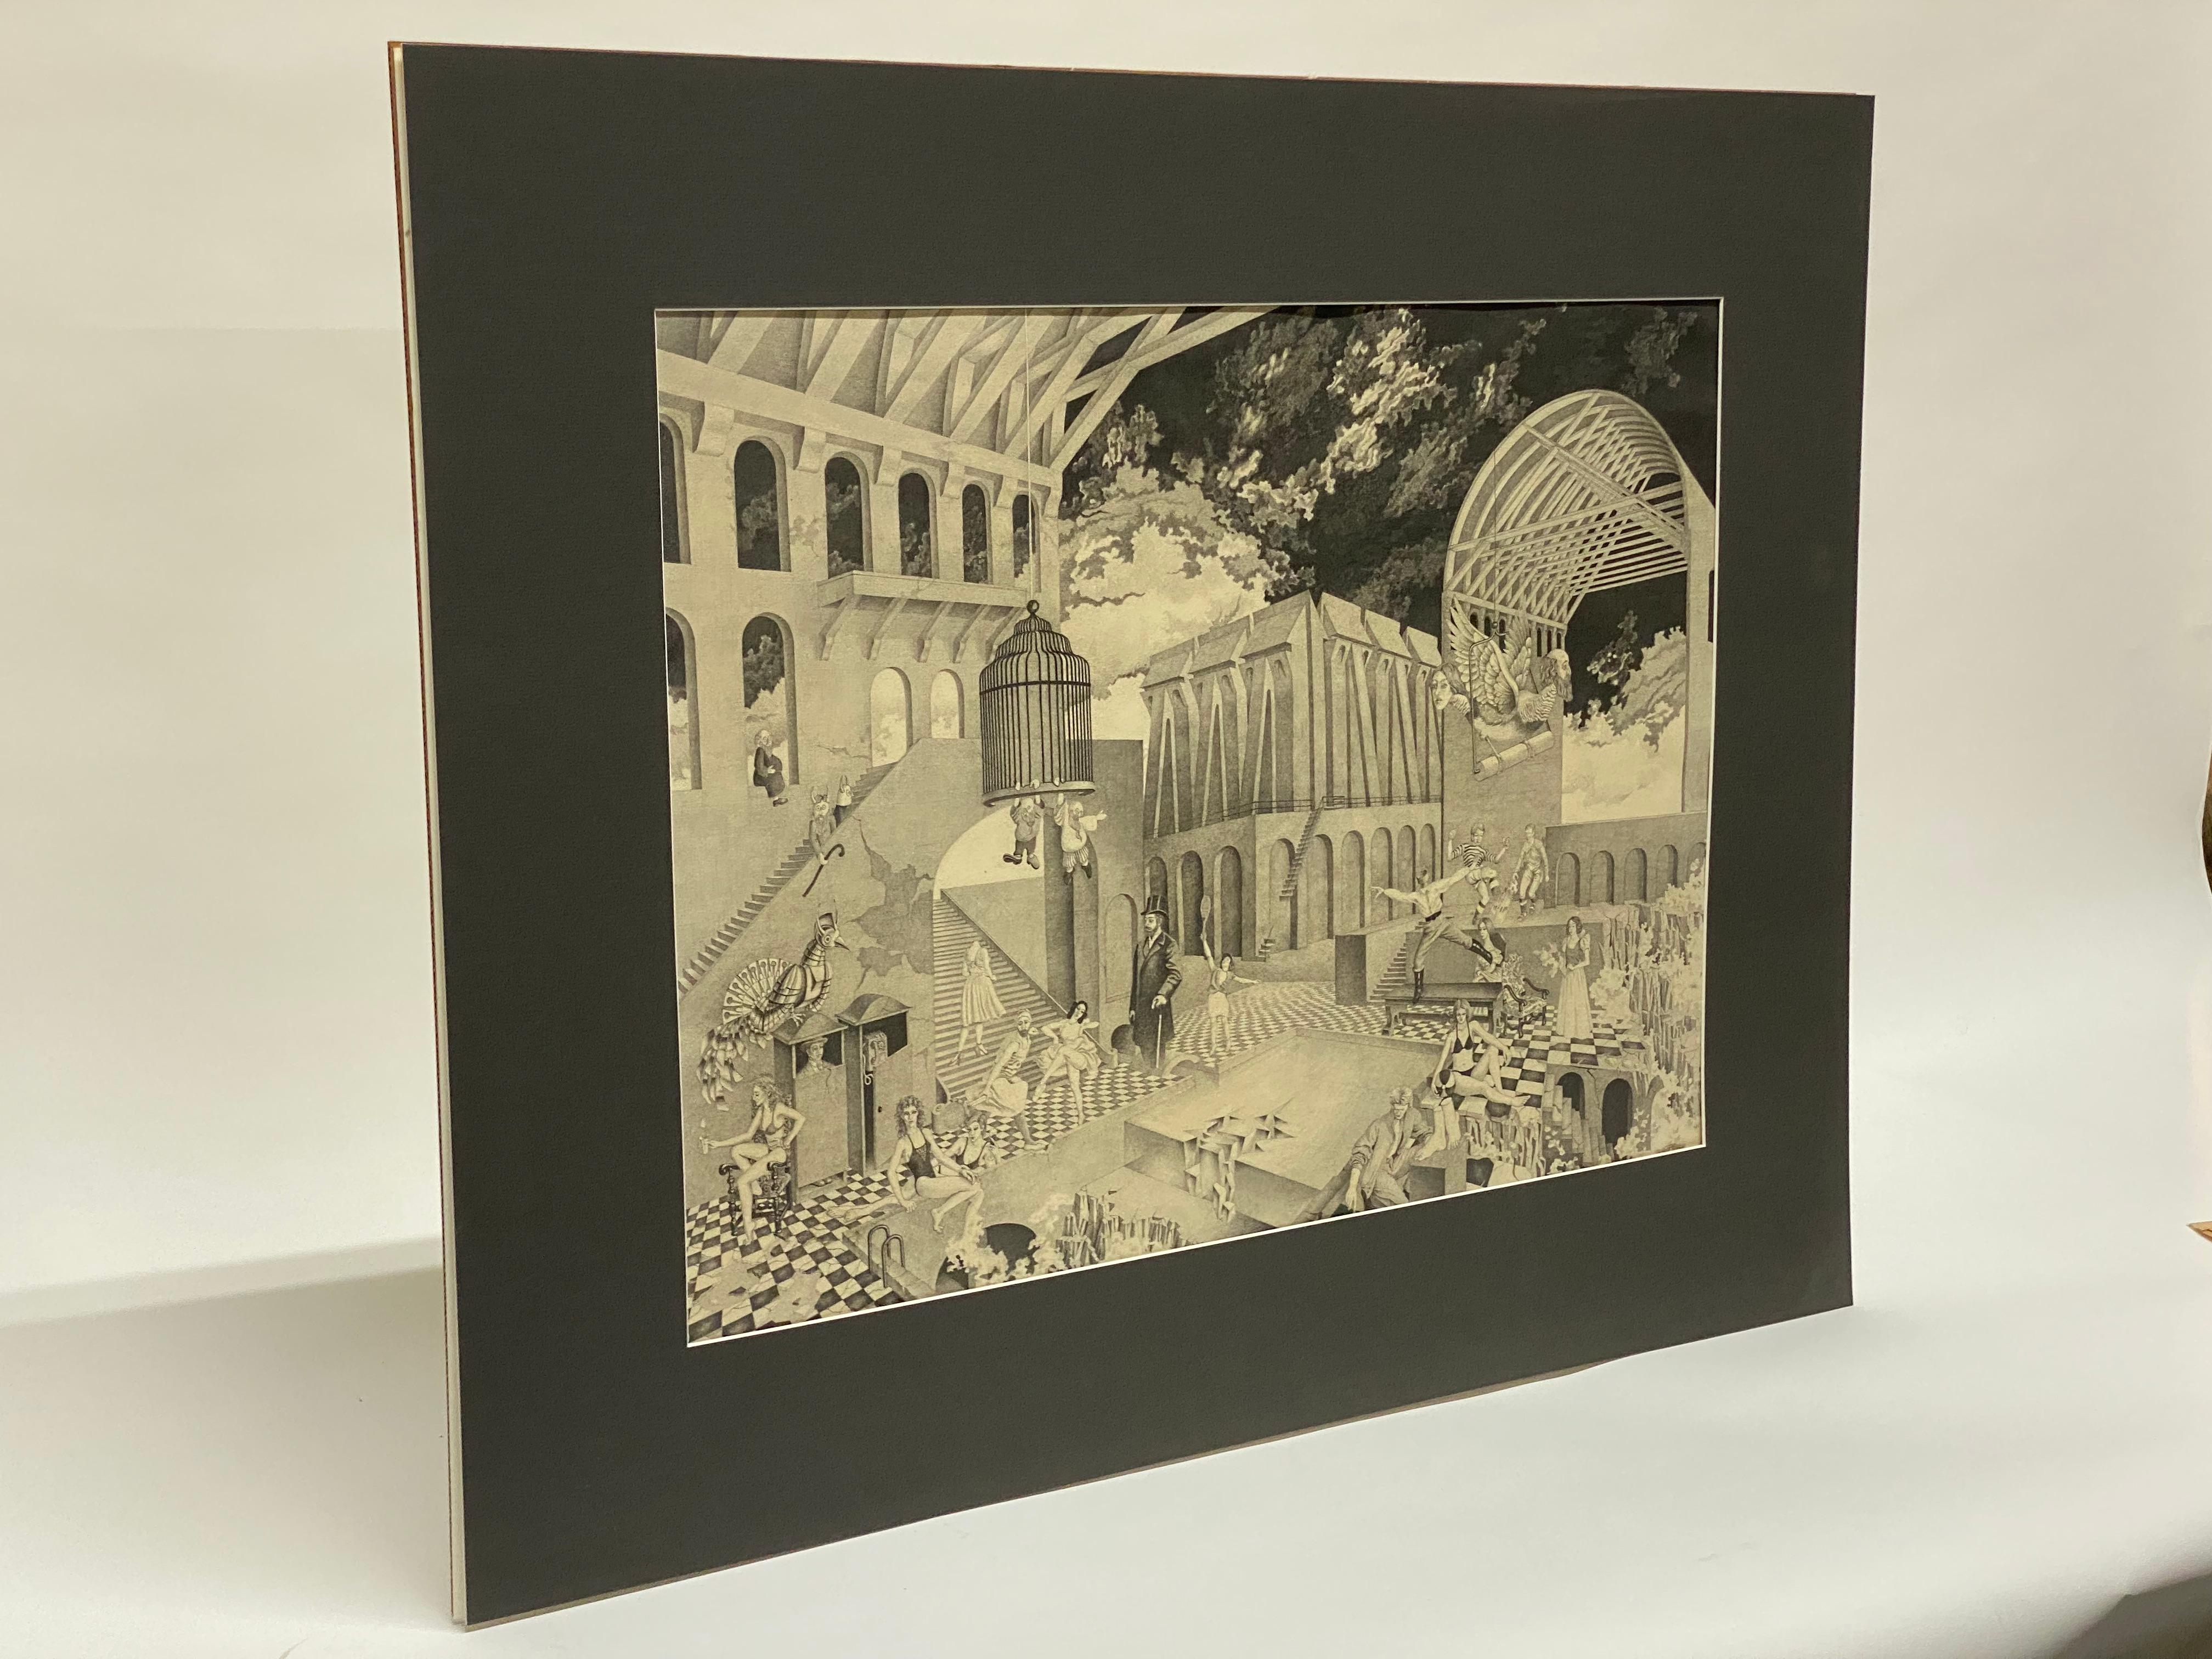 Die surrealistische Hommage von Peters oder Petru Vintila (1922-2002) an M.C. Escher mit dem Titel 